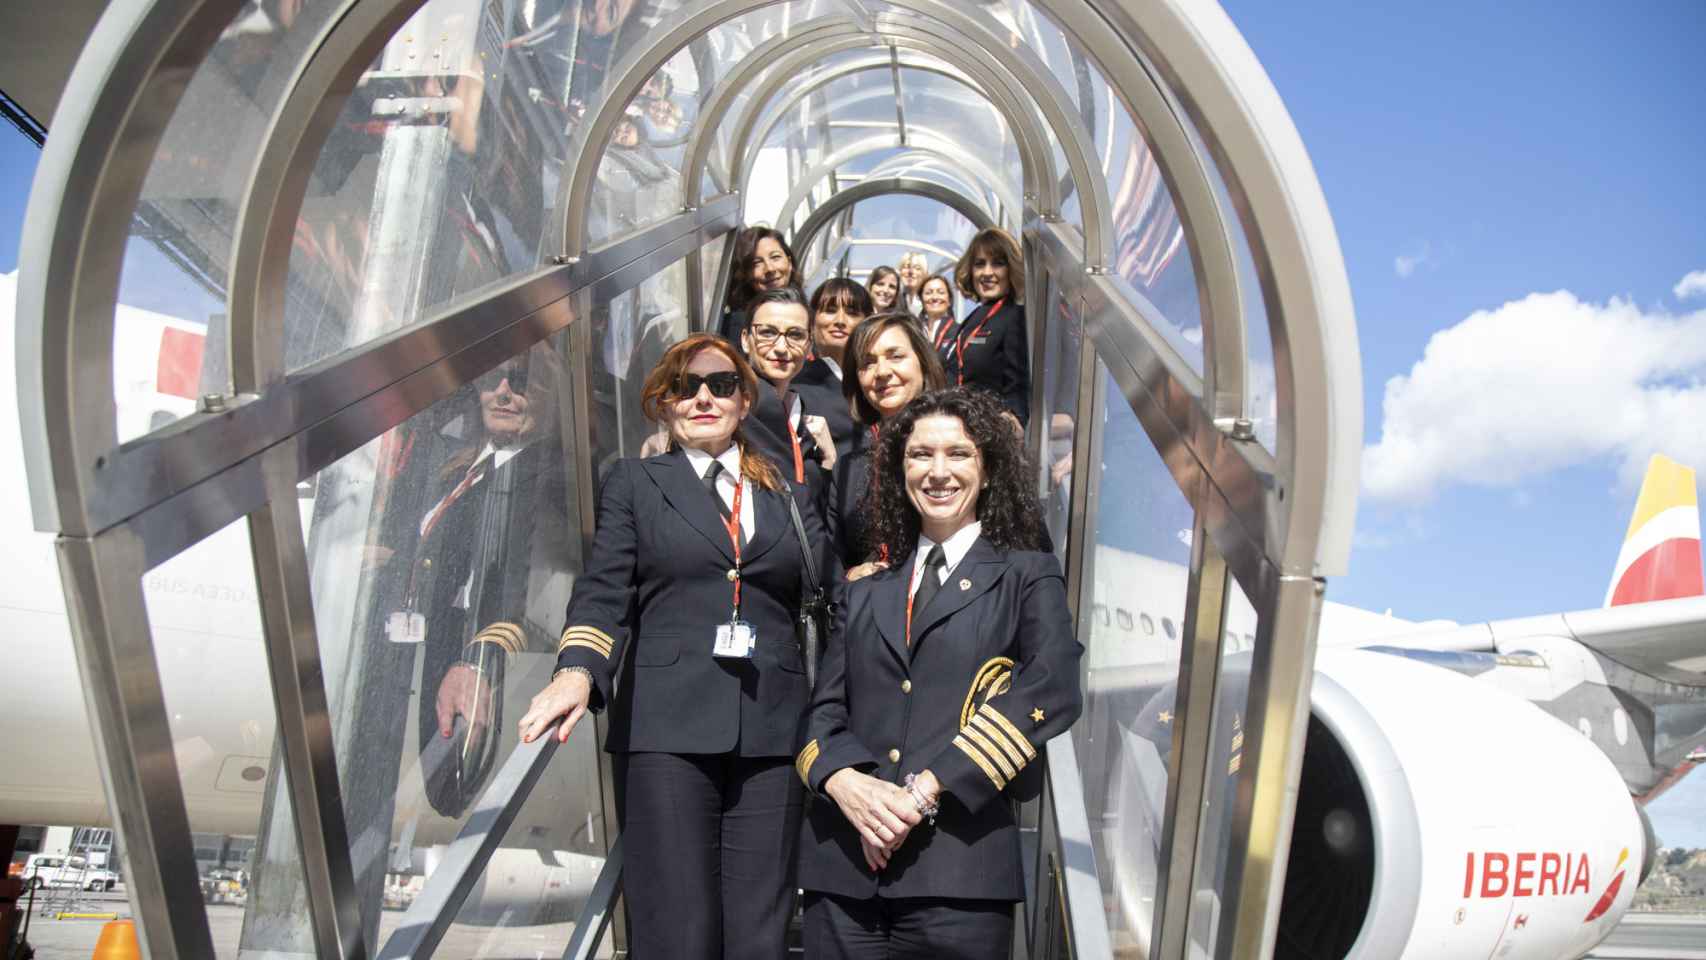 La tripulación al completo del avión, en la escalerilla de acceso.